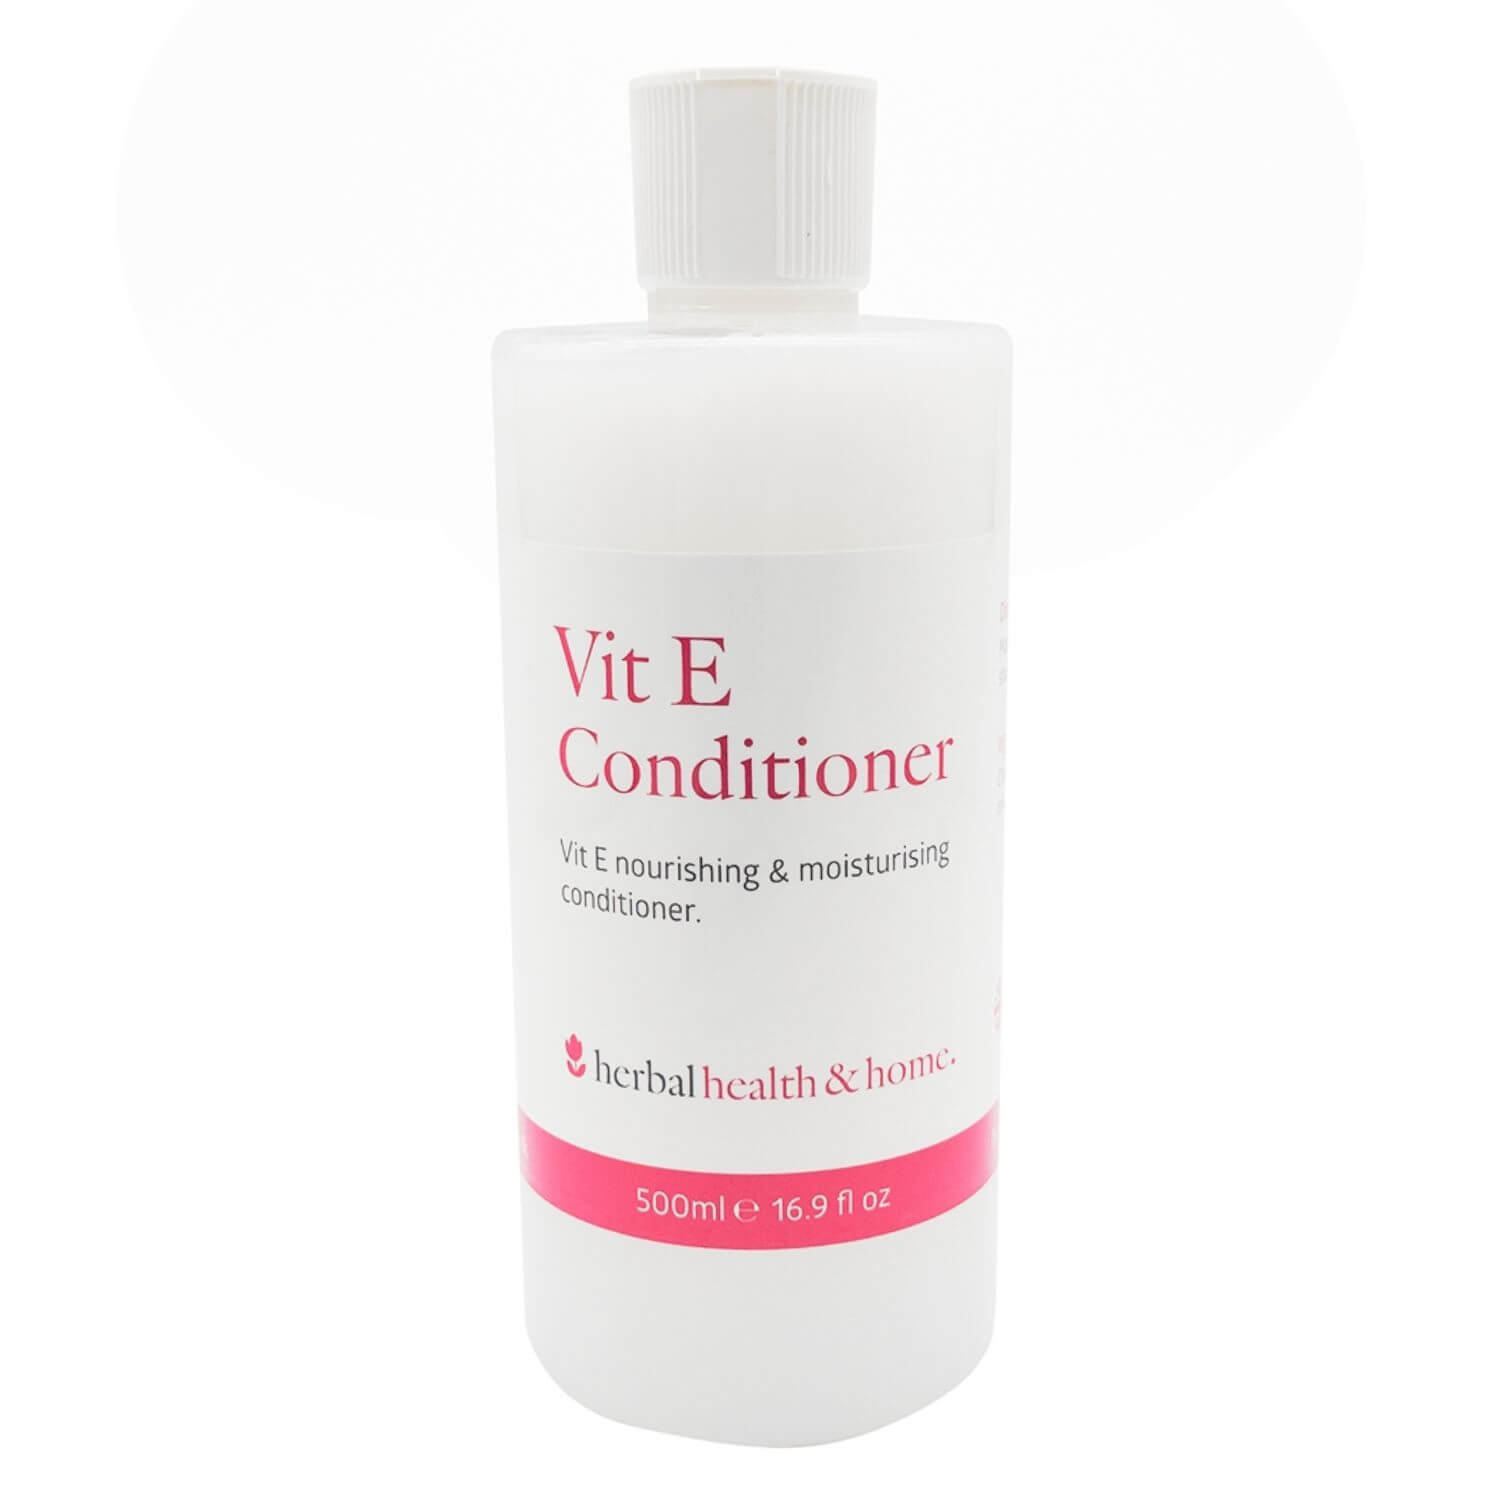 Vit E Conditioner | Herbal, Health & Home